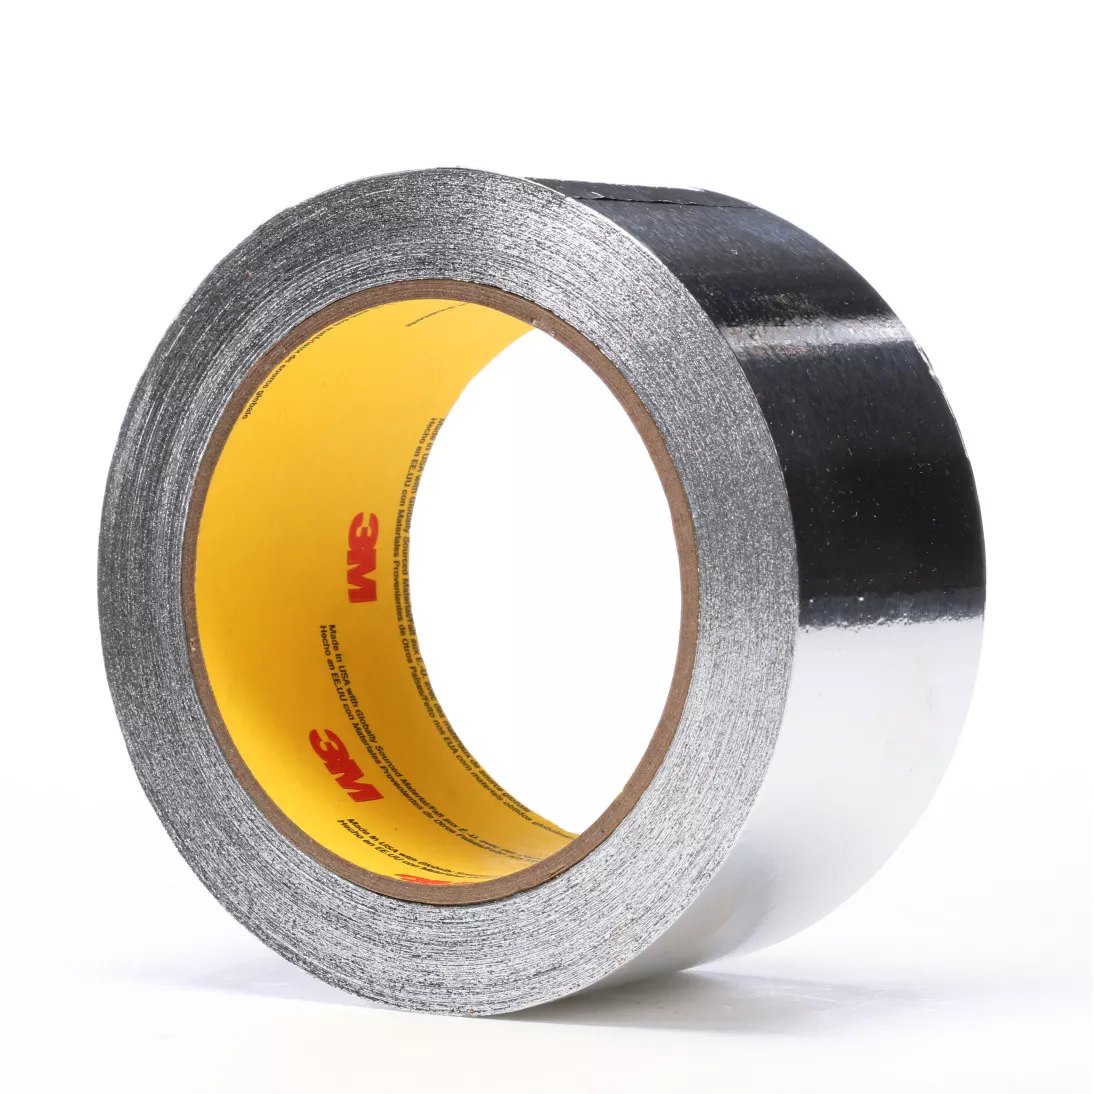 3M™ Aluminum Foil Tape 4380, Silver, 2 in x 55 yd, 3.25 mil, 24 rolls
per case